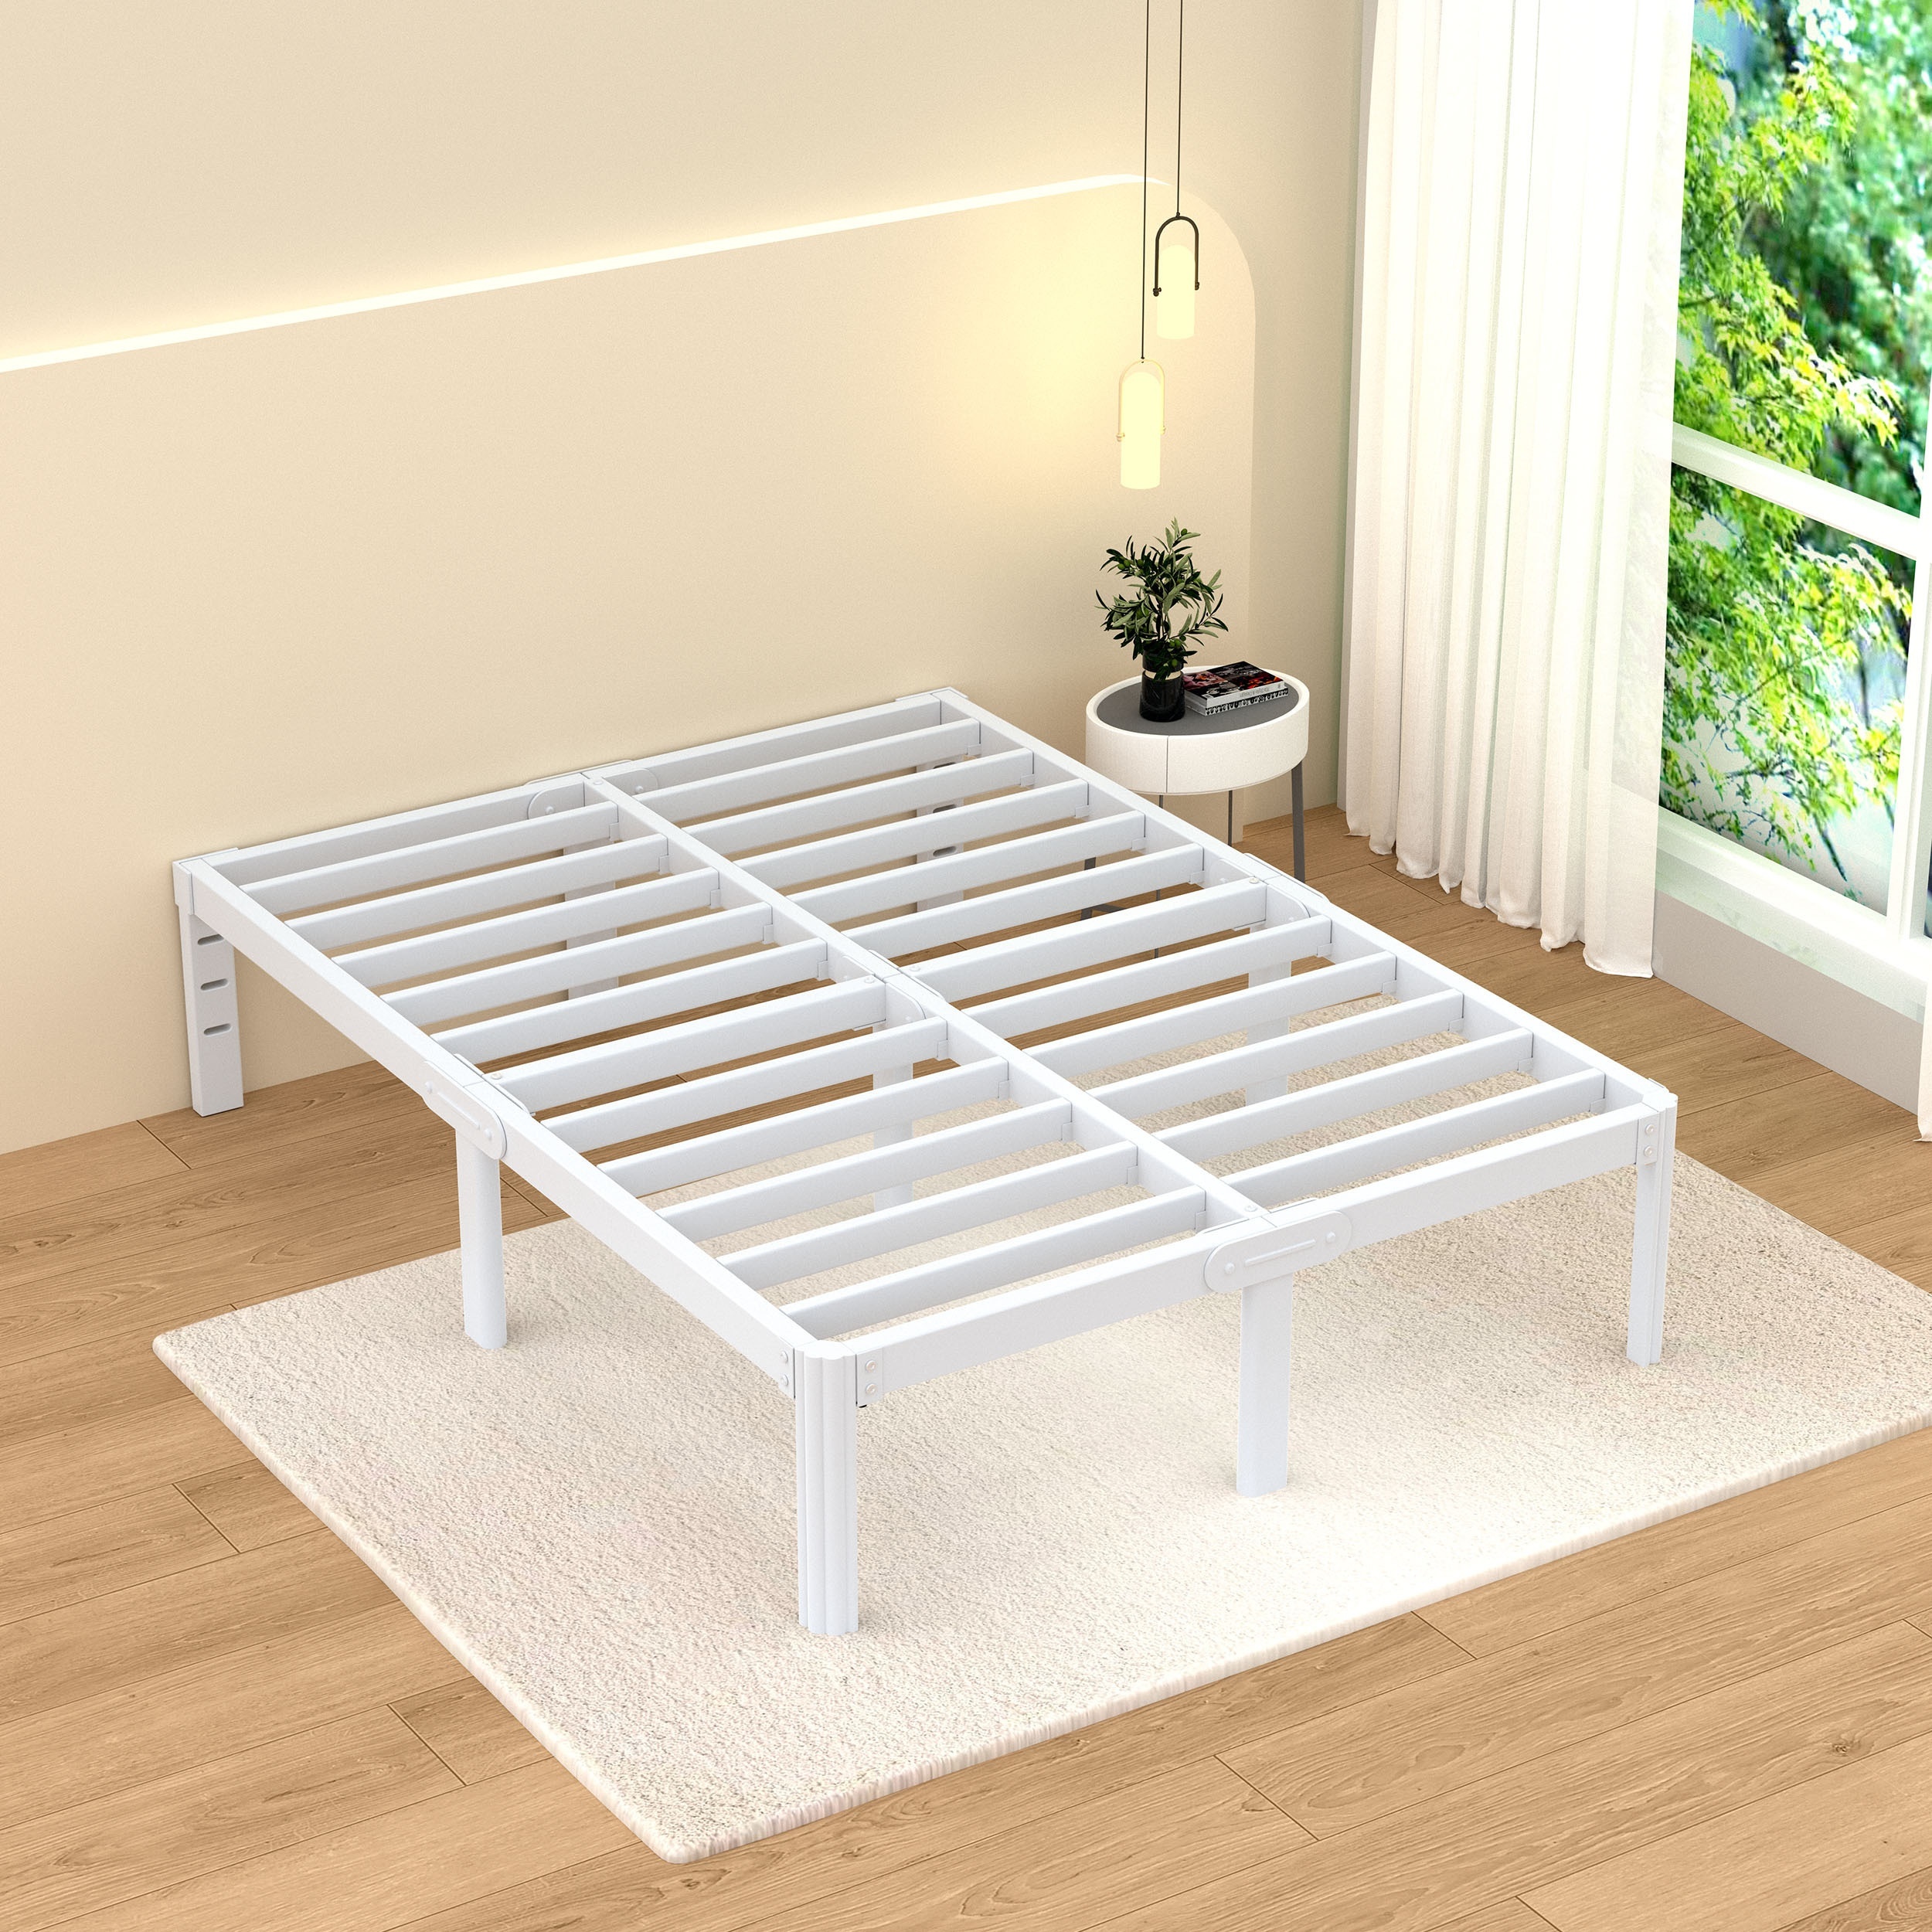 Base de cama de metal tamaño California King de 14 pulgadas, base de cama  resistente para colchón, sin necesidad de somier, color negro